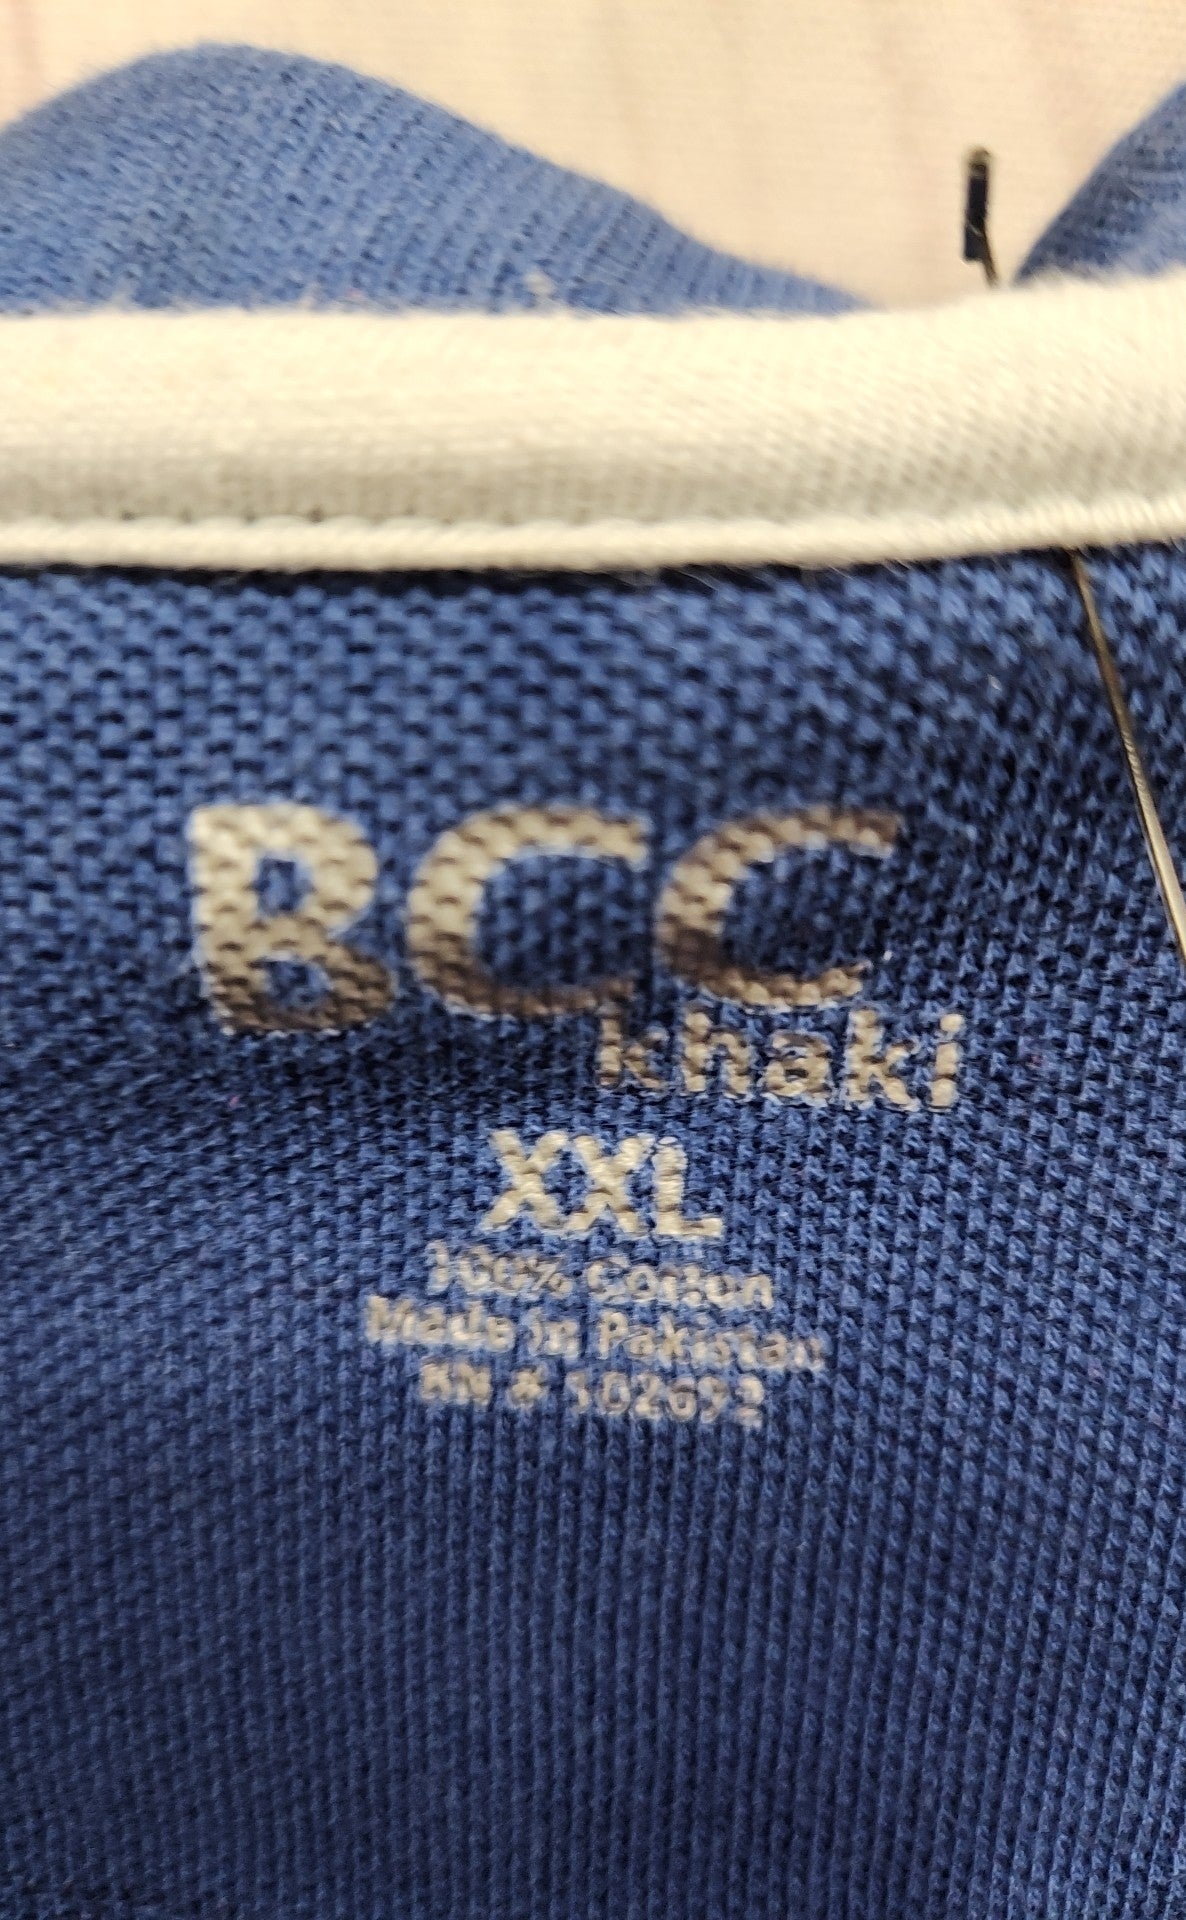 Bcc Men's Size XXL Blue Shirt